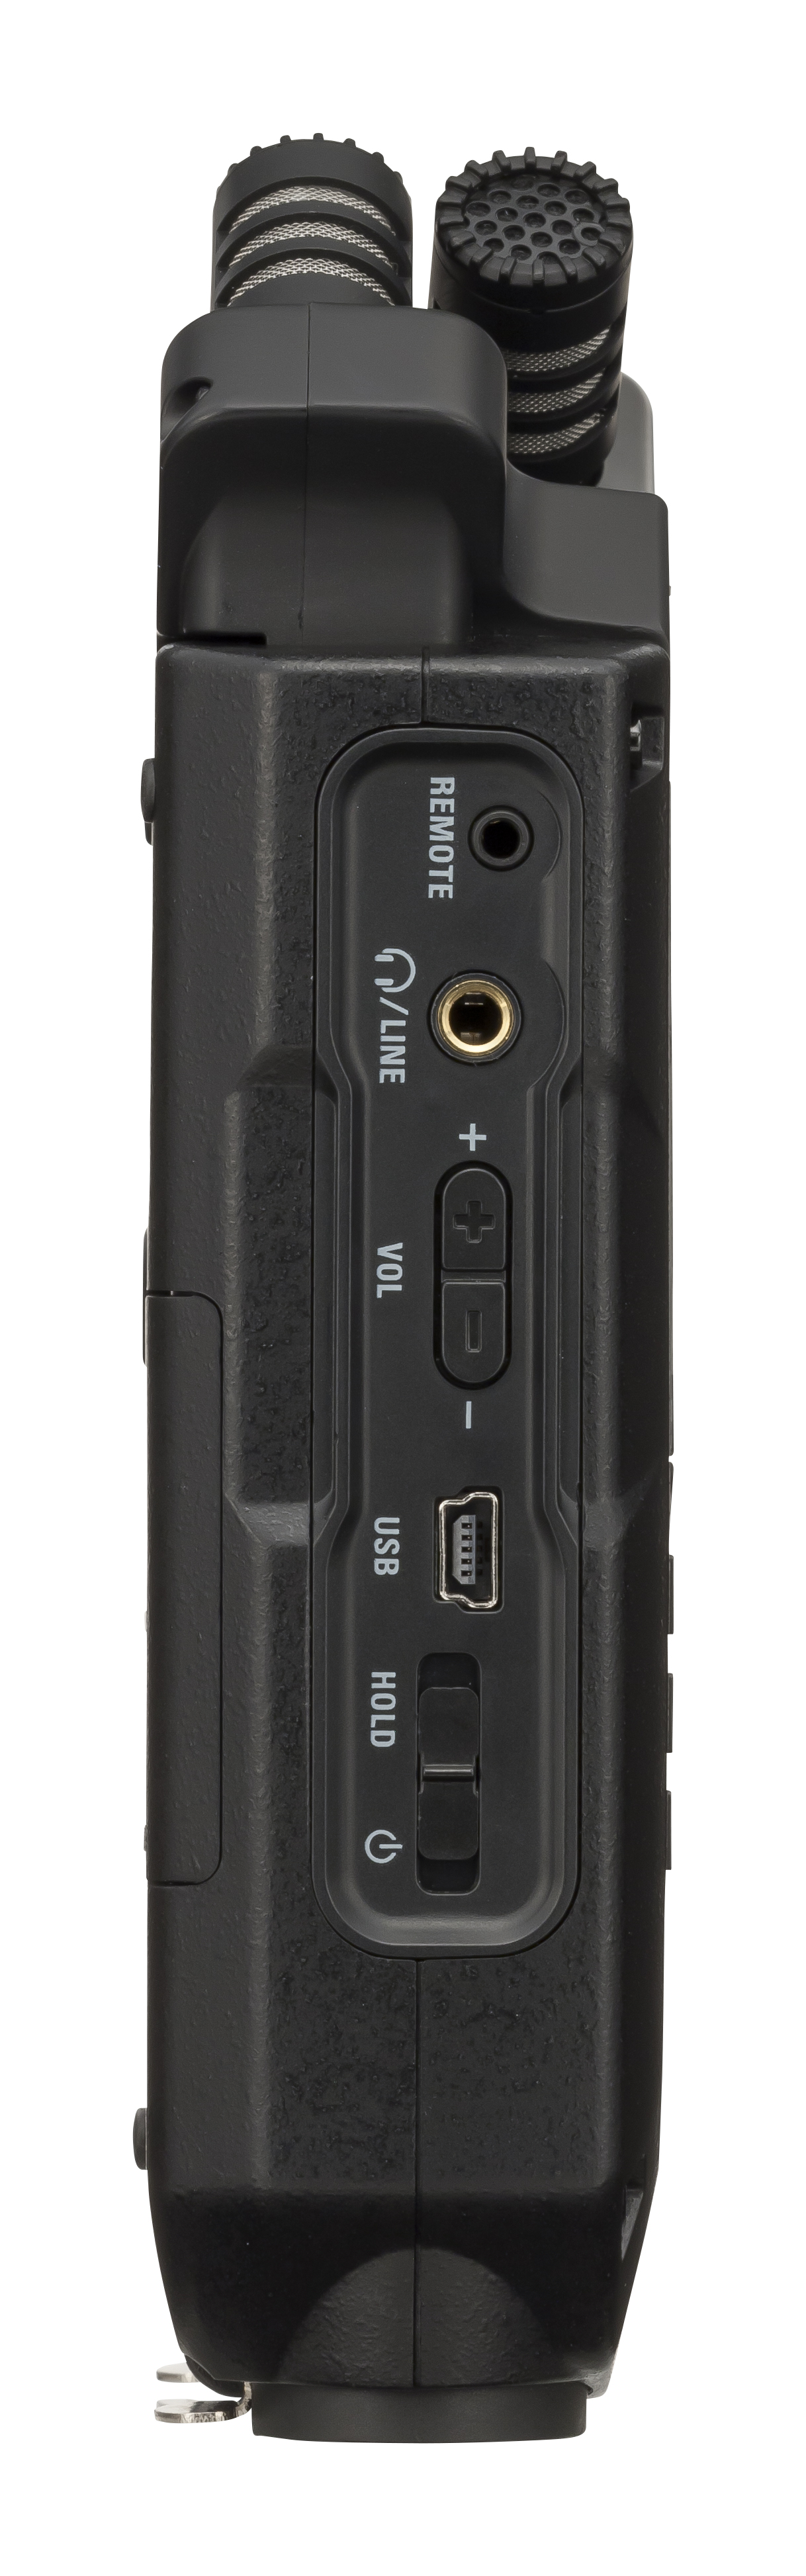 Zoom H4n Pro Black - Grabadora portátil - Variation 3